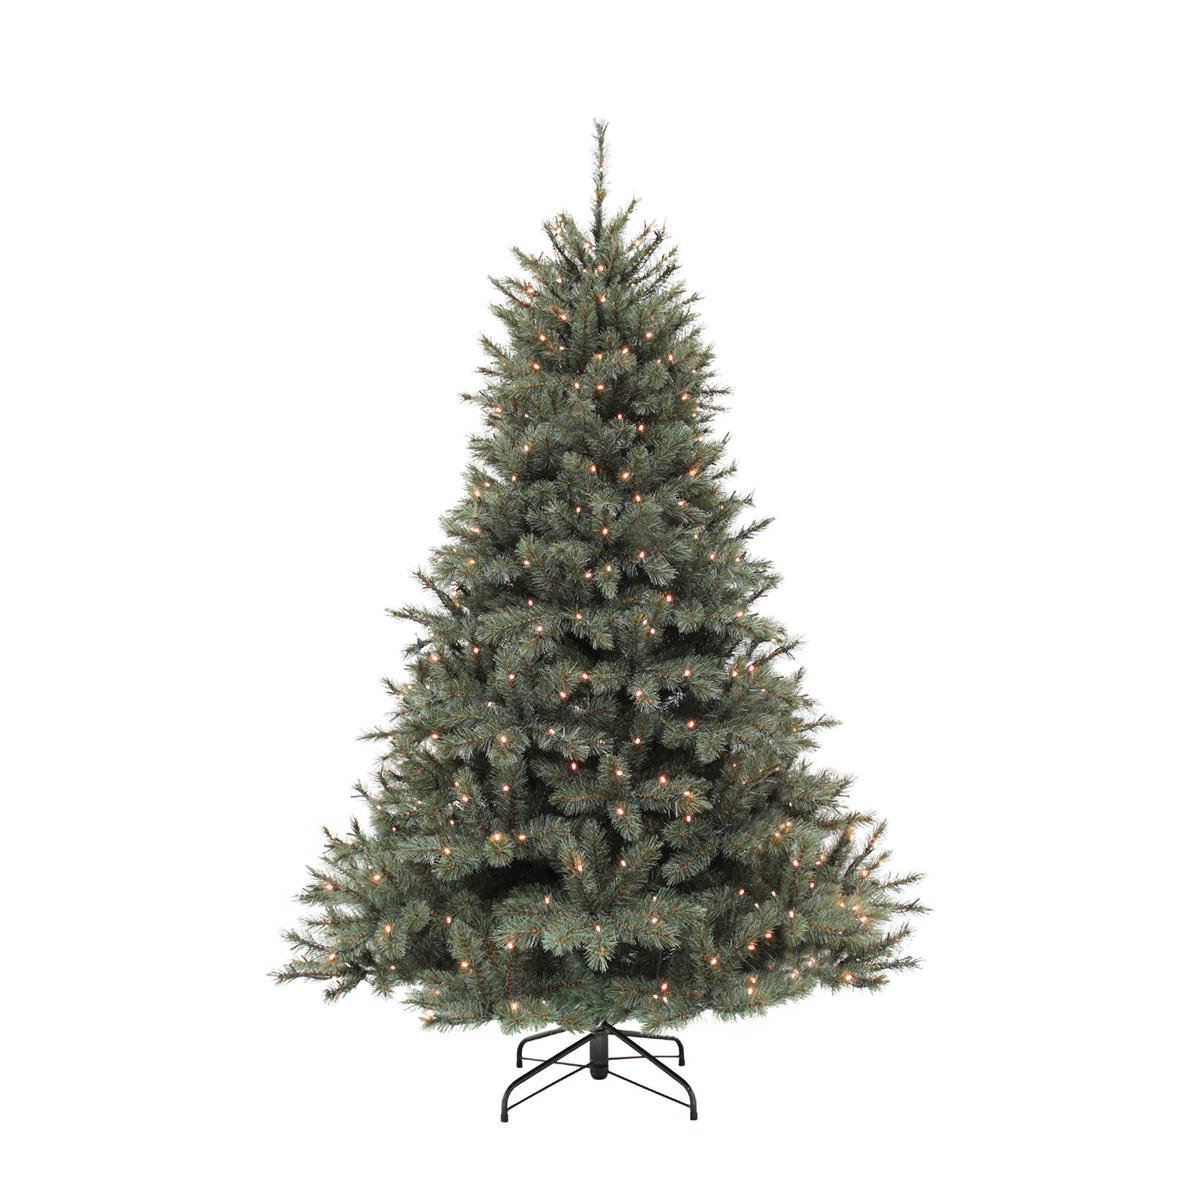 Haan Onderbreking influenza Triumph Tree verlichte kerstboom Forest Frosted (h155 x Ø119 cm) | wehkamp